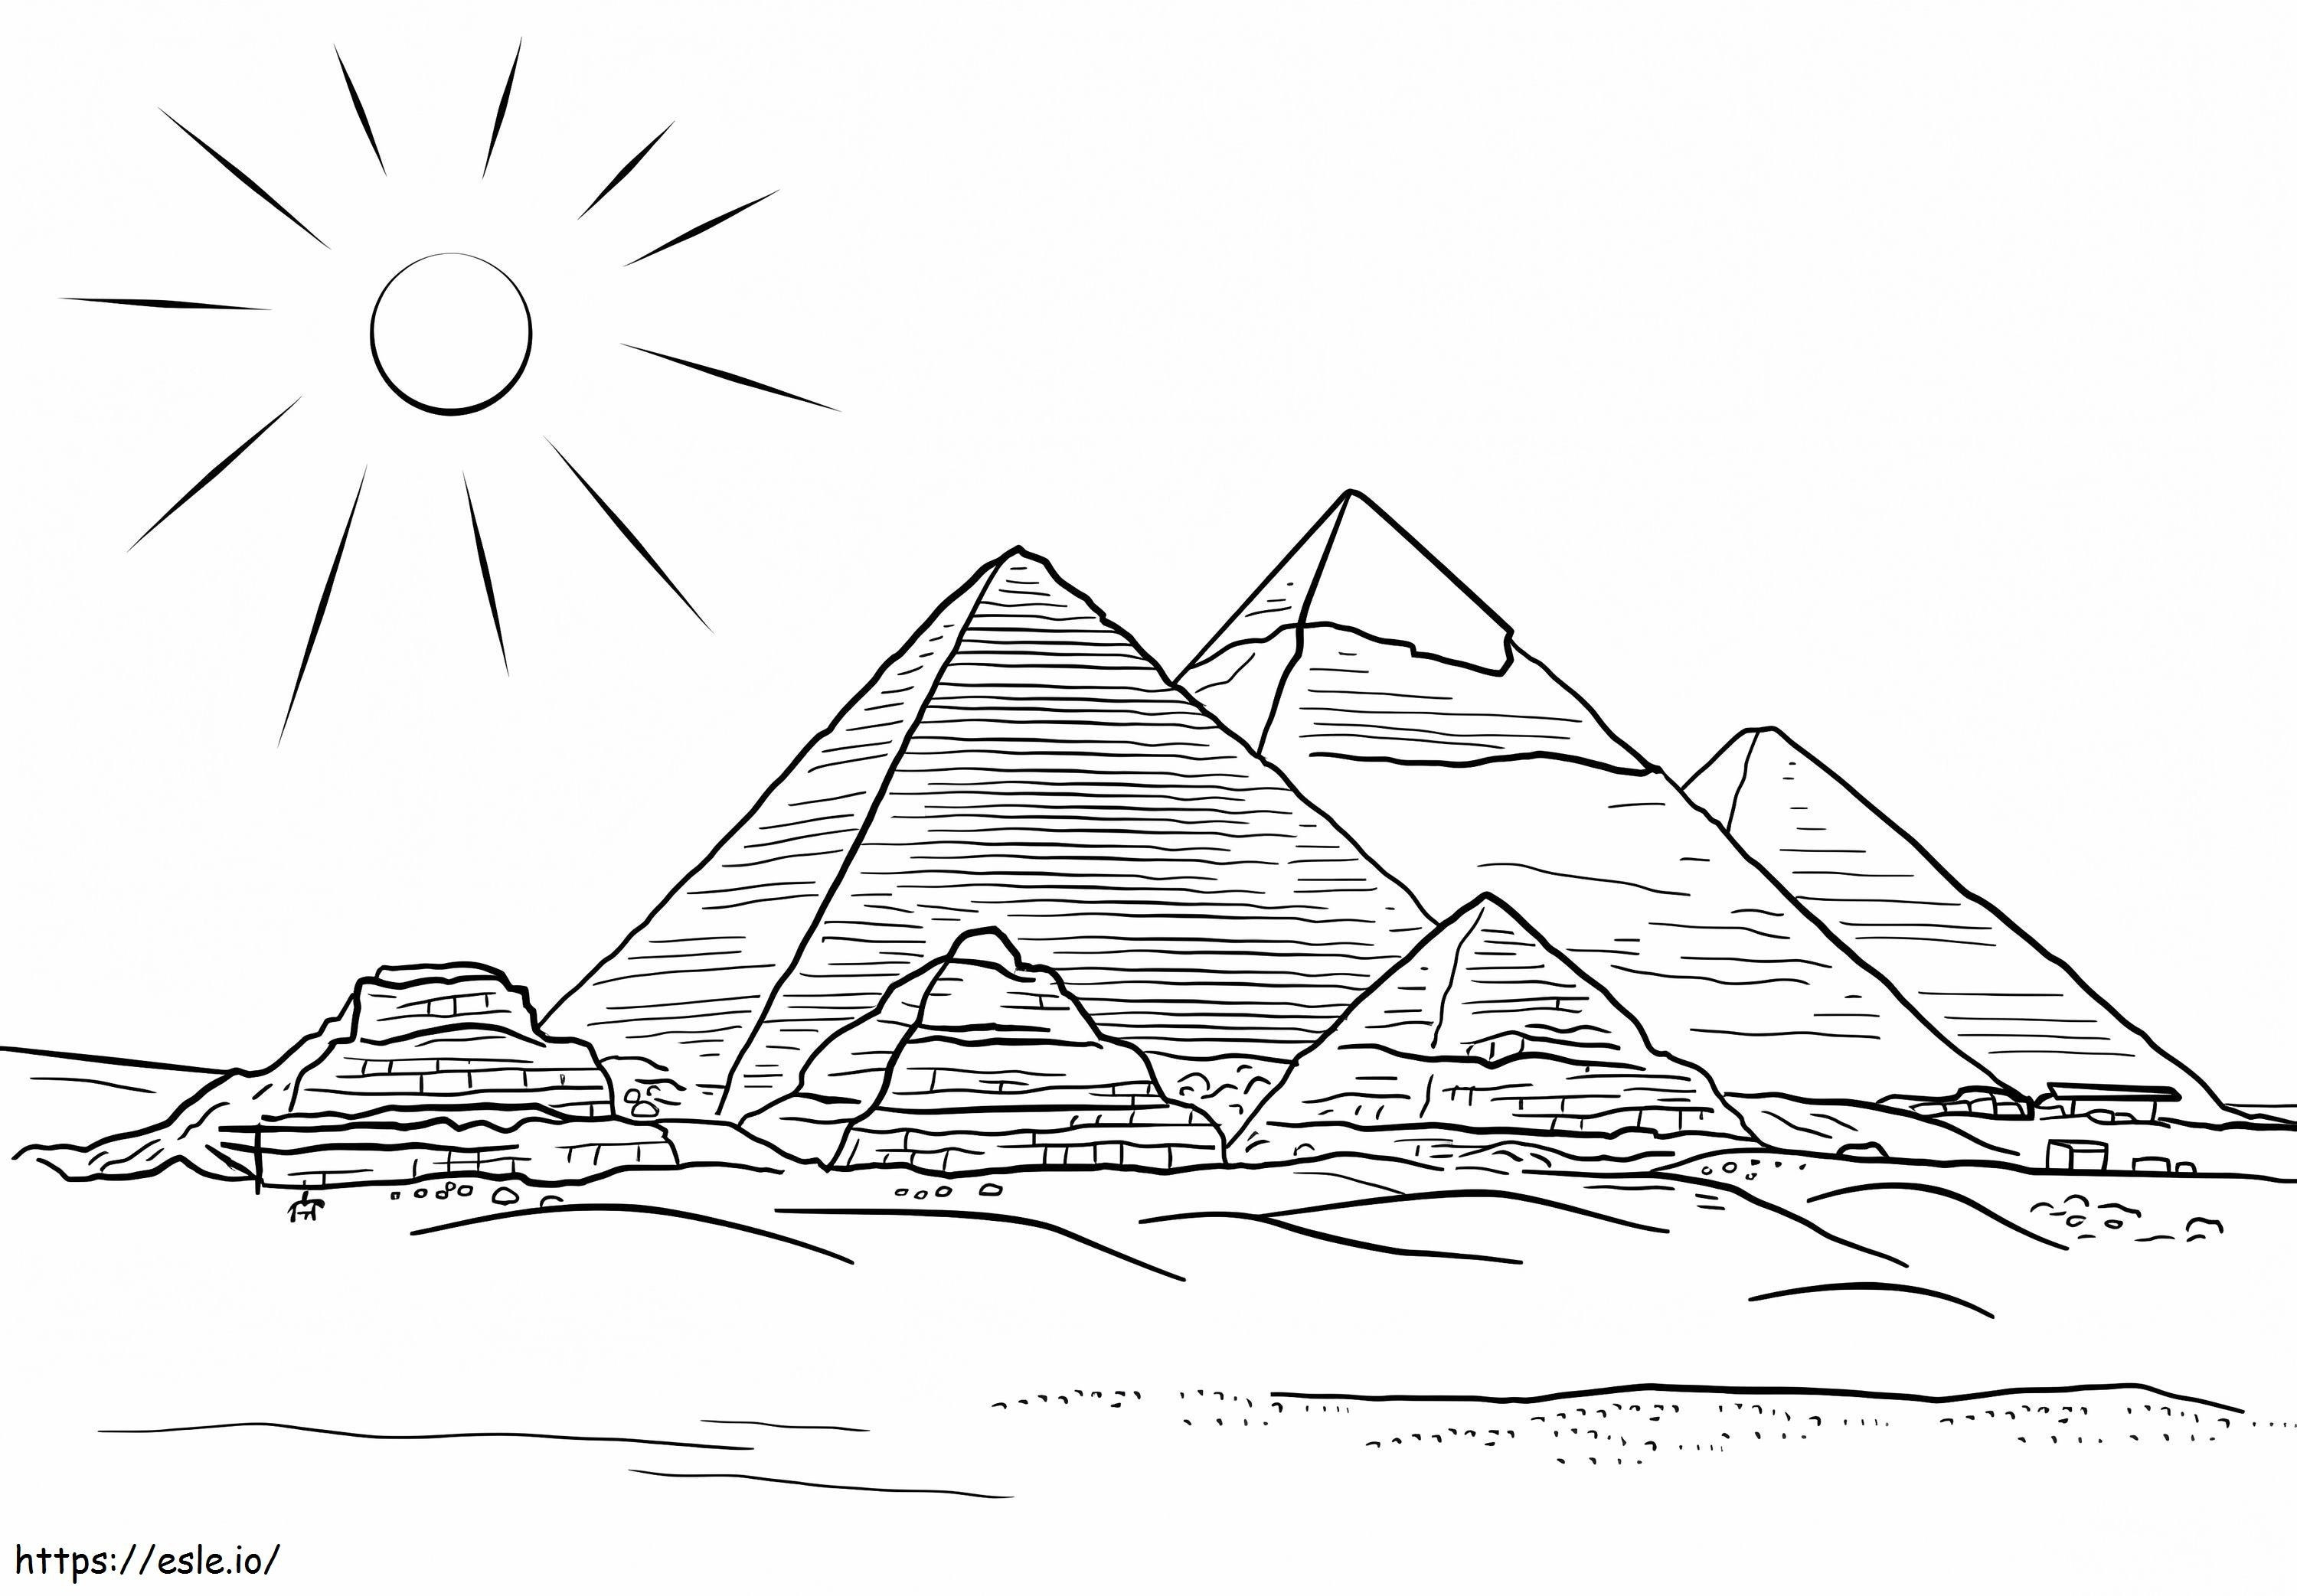 Pyramiden von Gizeh ausmalbilder